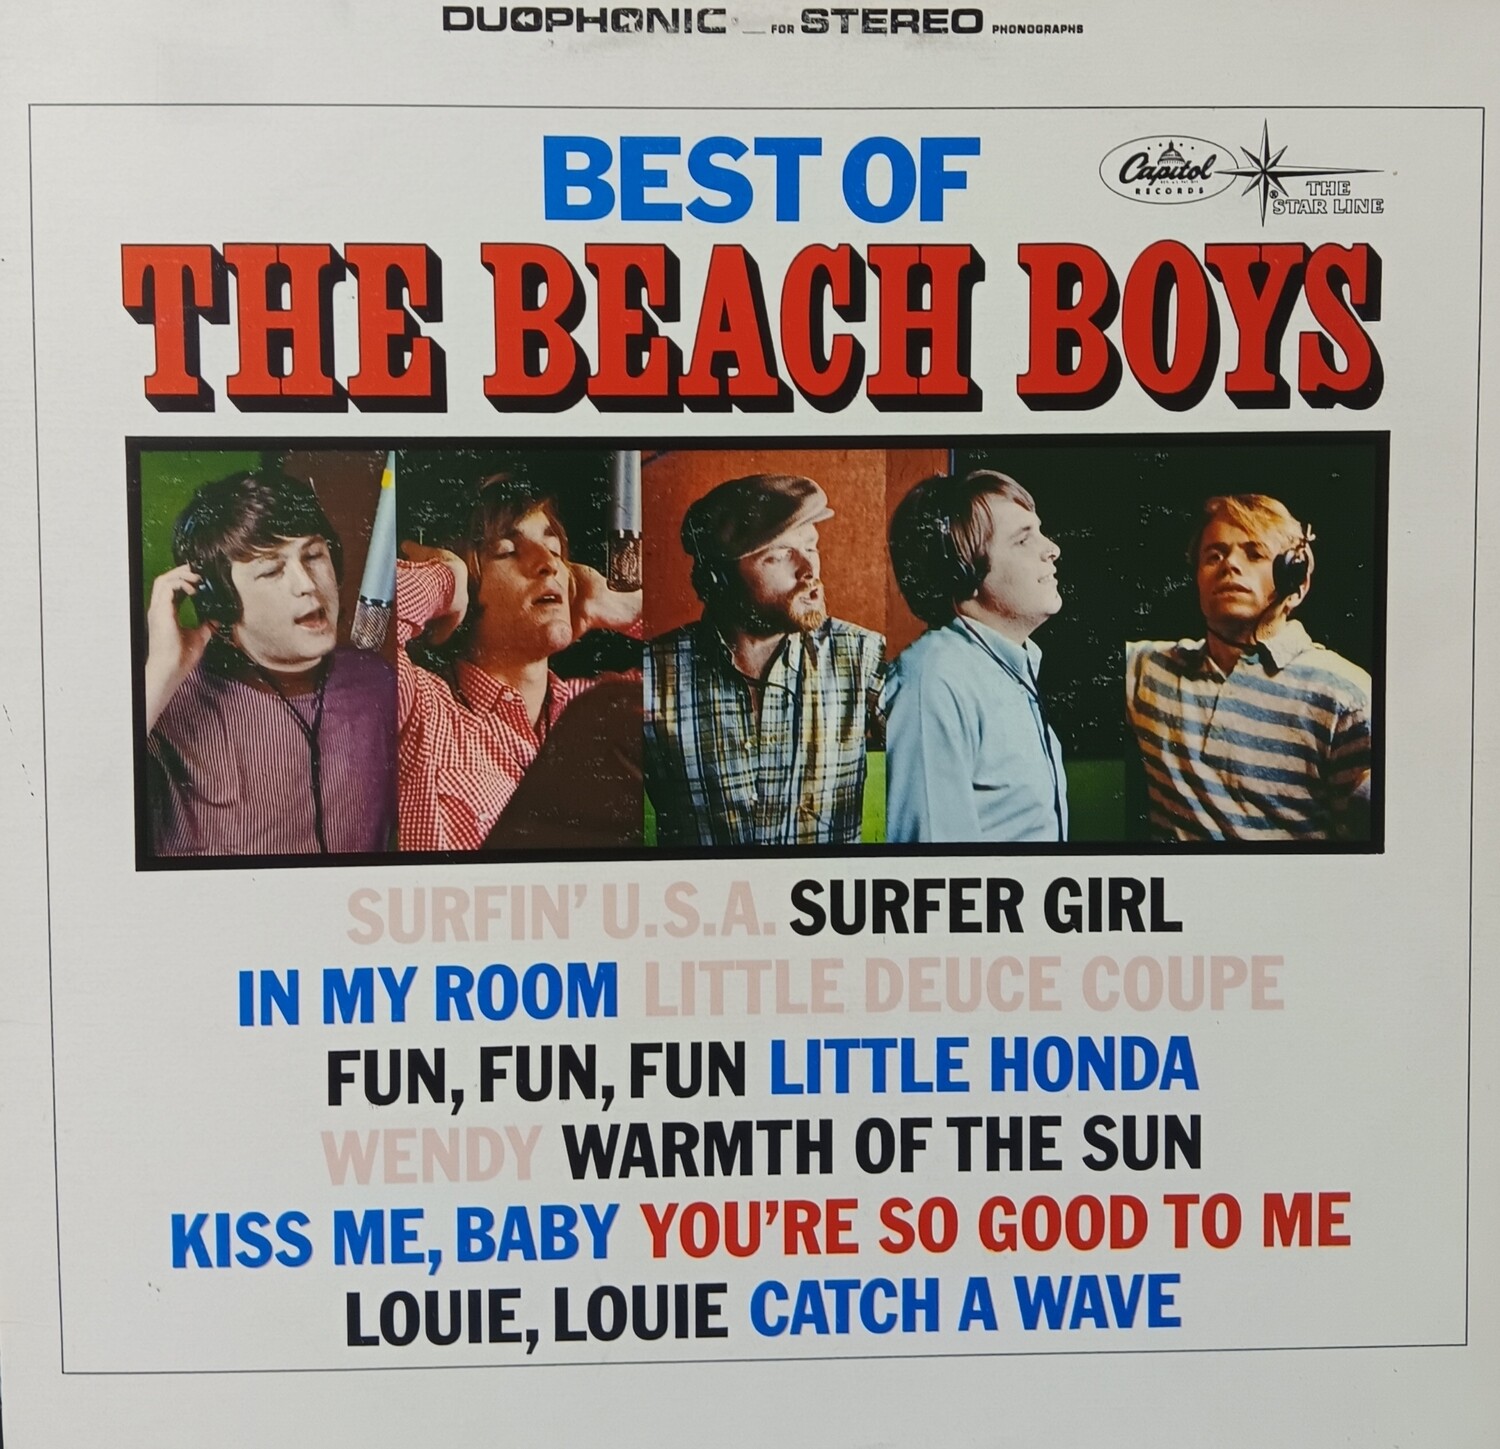 THE BEACH BOYS - The Best of The Beach Boys